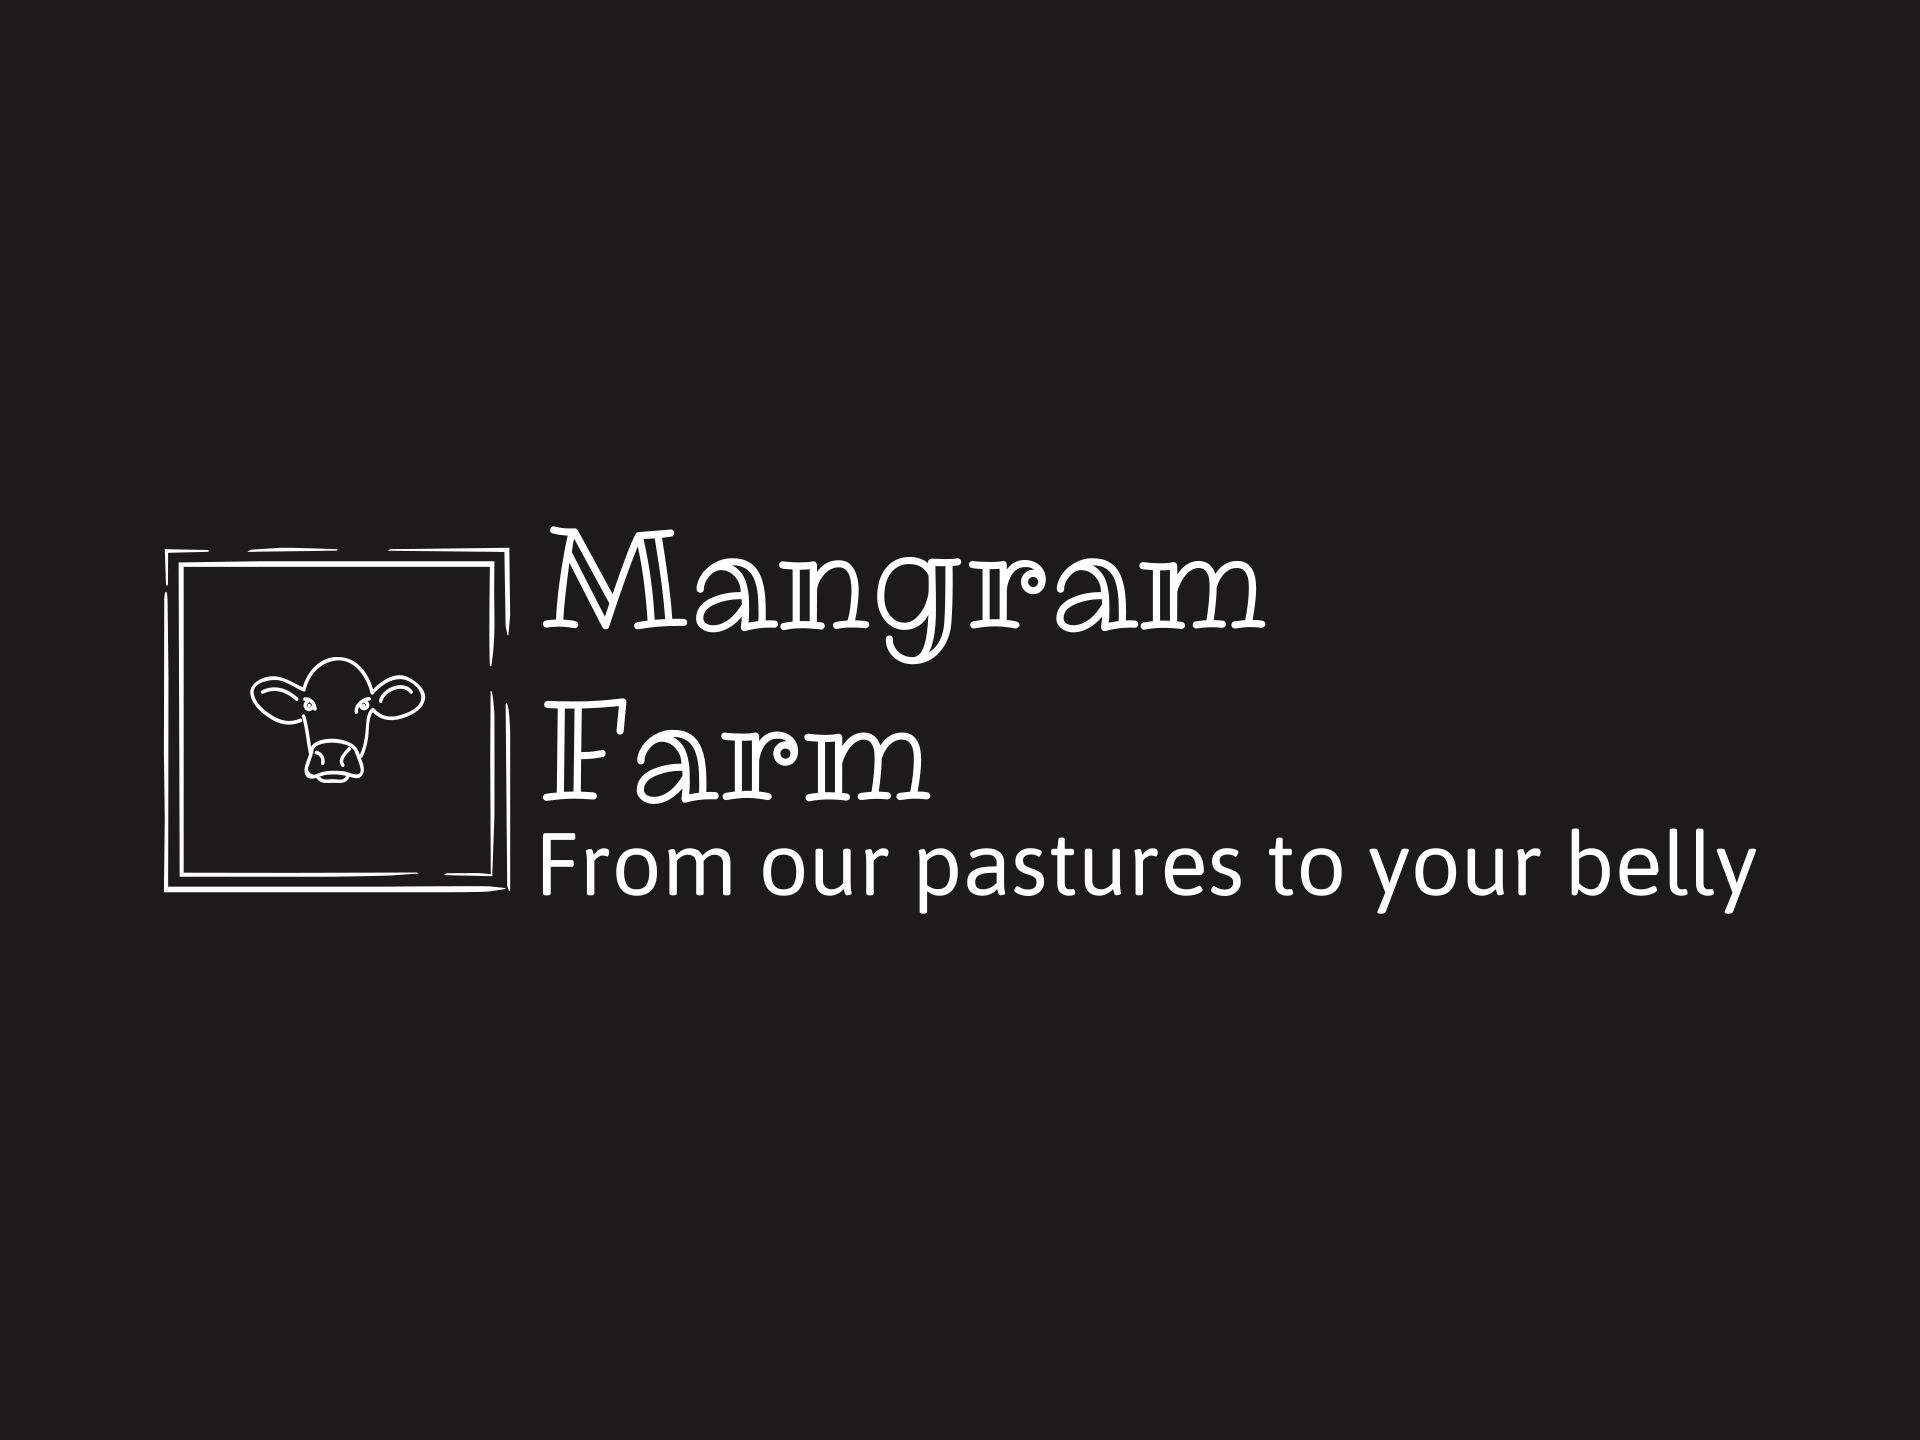 Mangram Farm